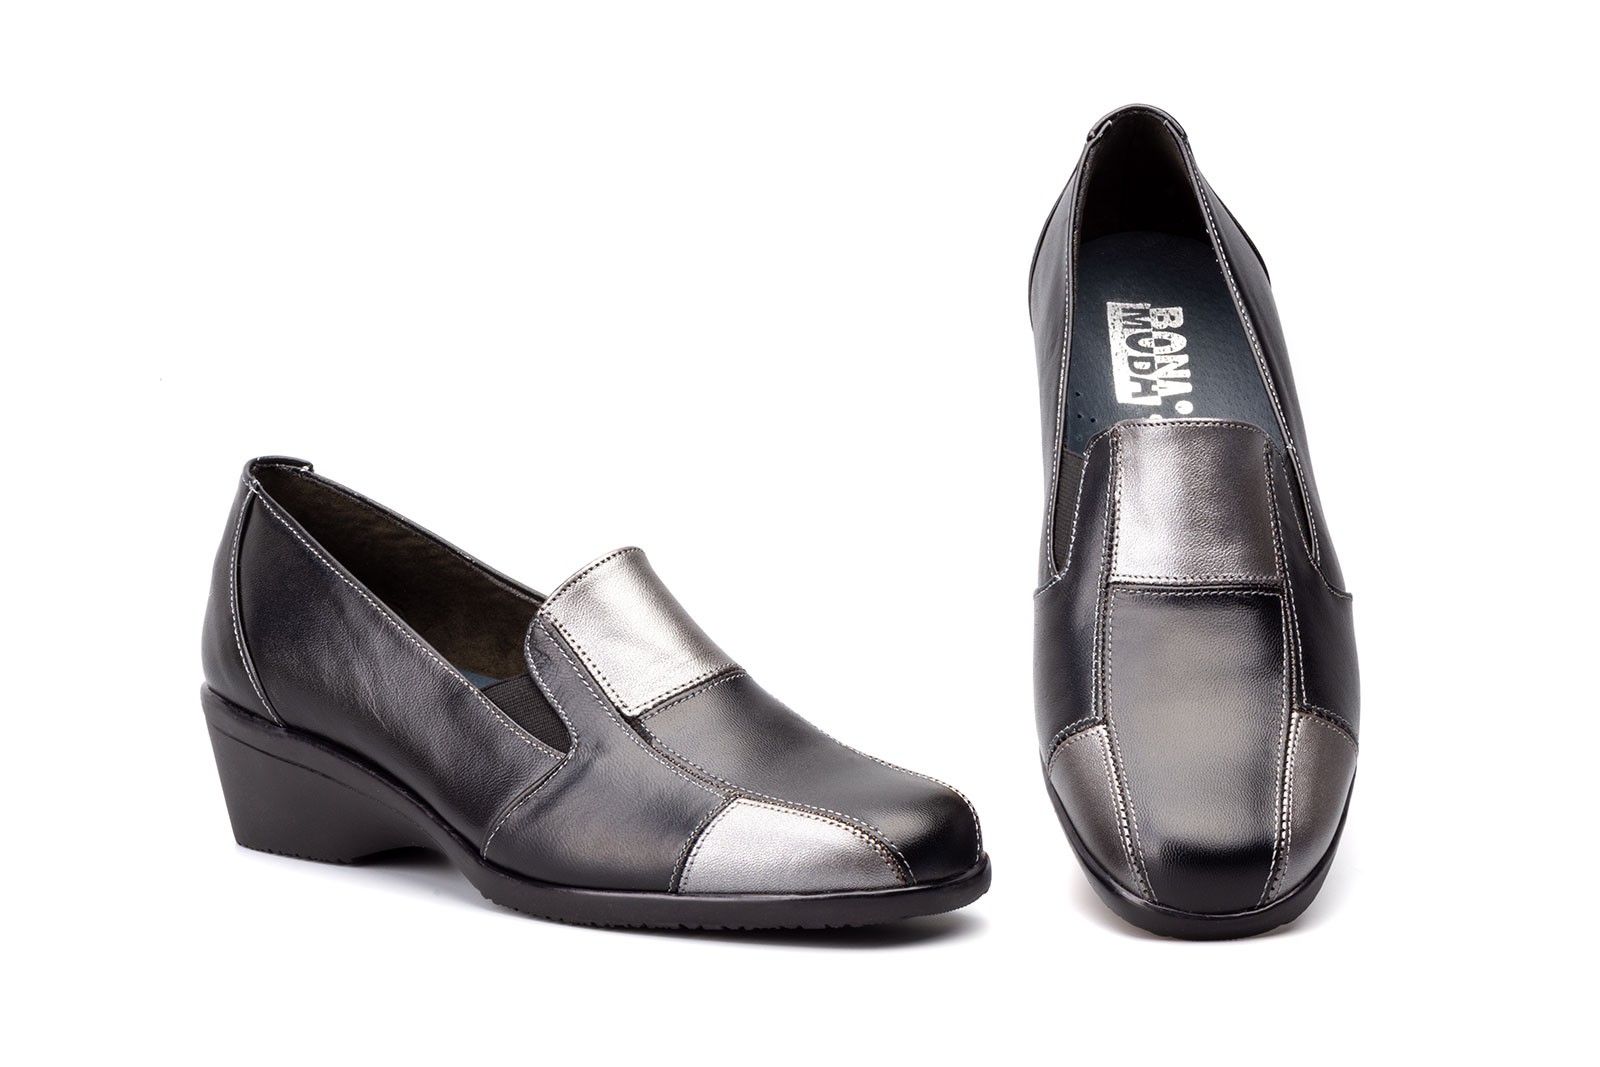 Zapatos mujer en piel negra y plata